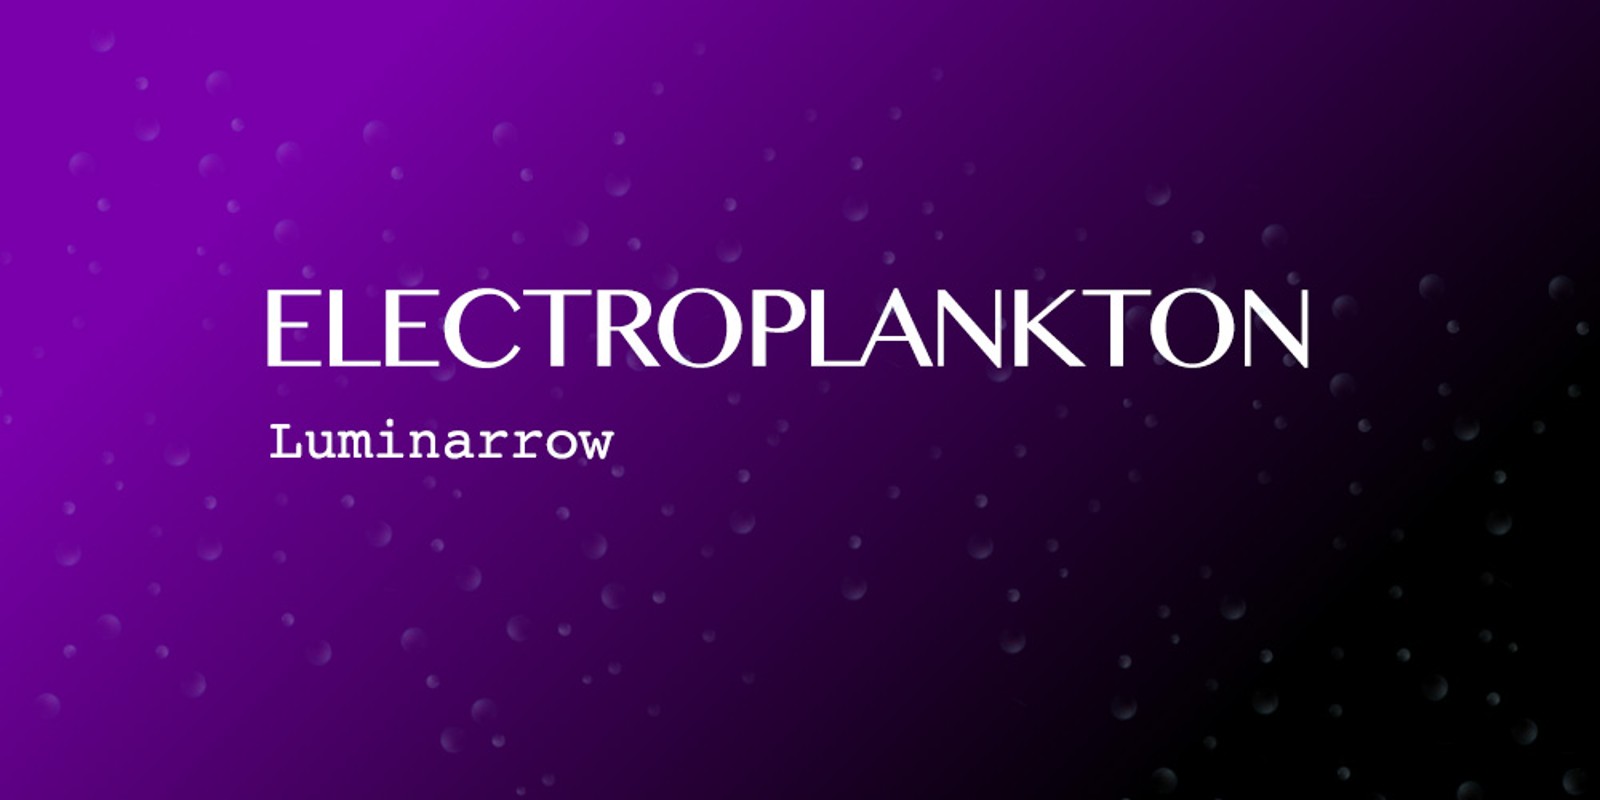 Electroplankton™ Luminarrow